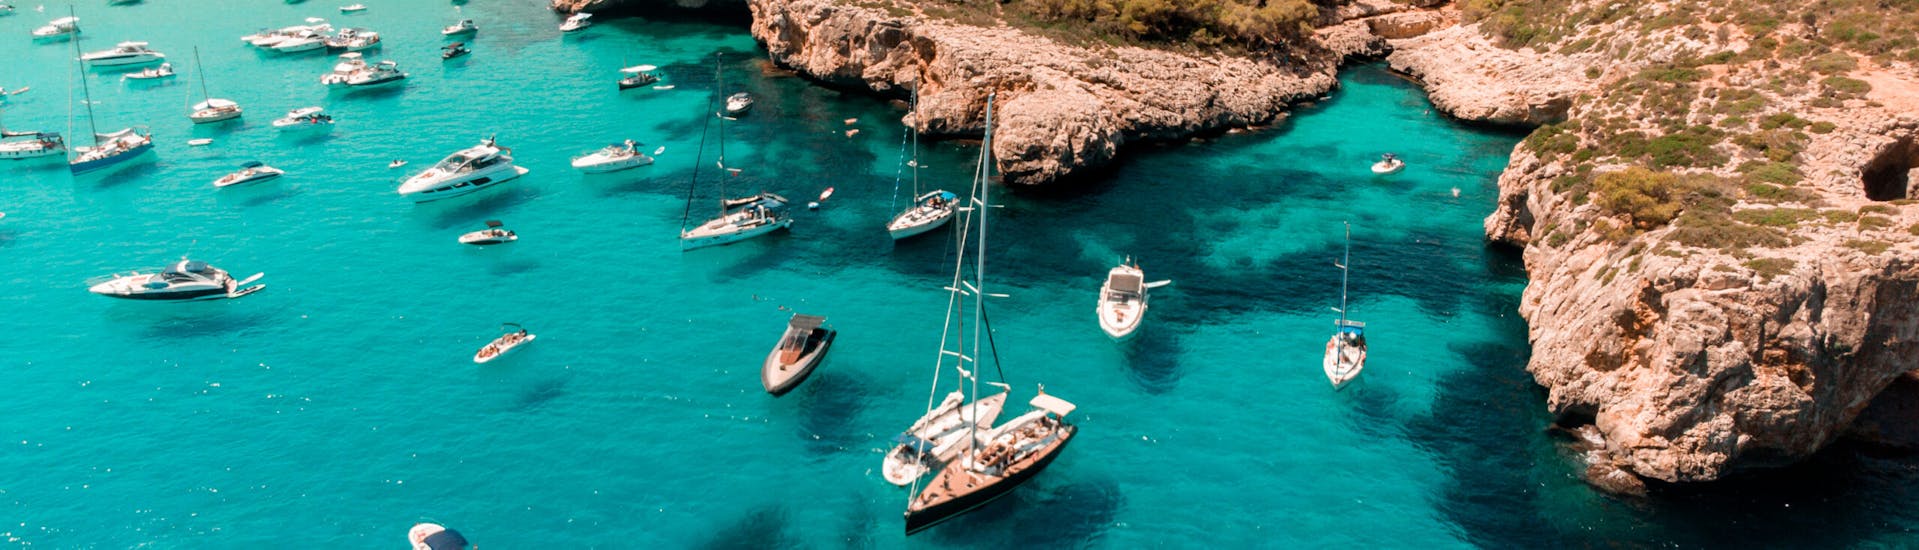 Gita privata in barca a vela da Portocolom a Cala Varques con bagno in mare e visita turistica.